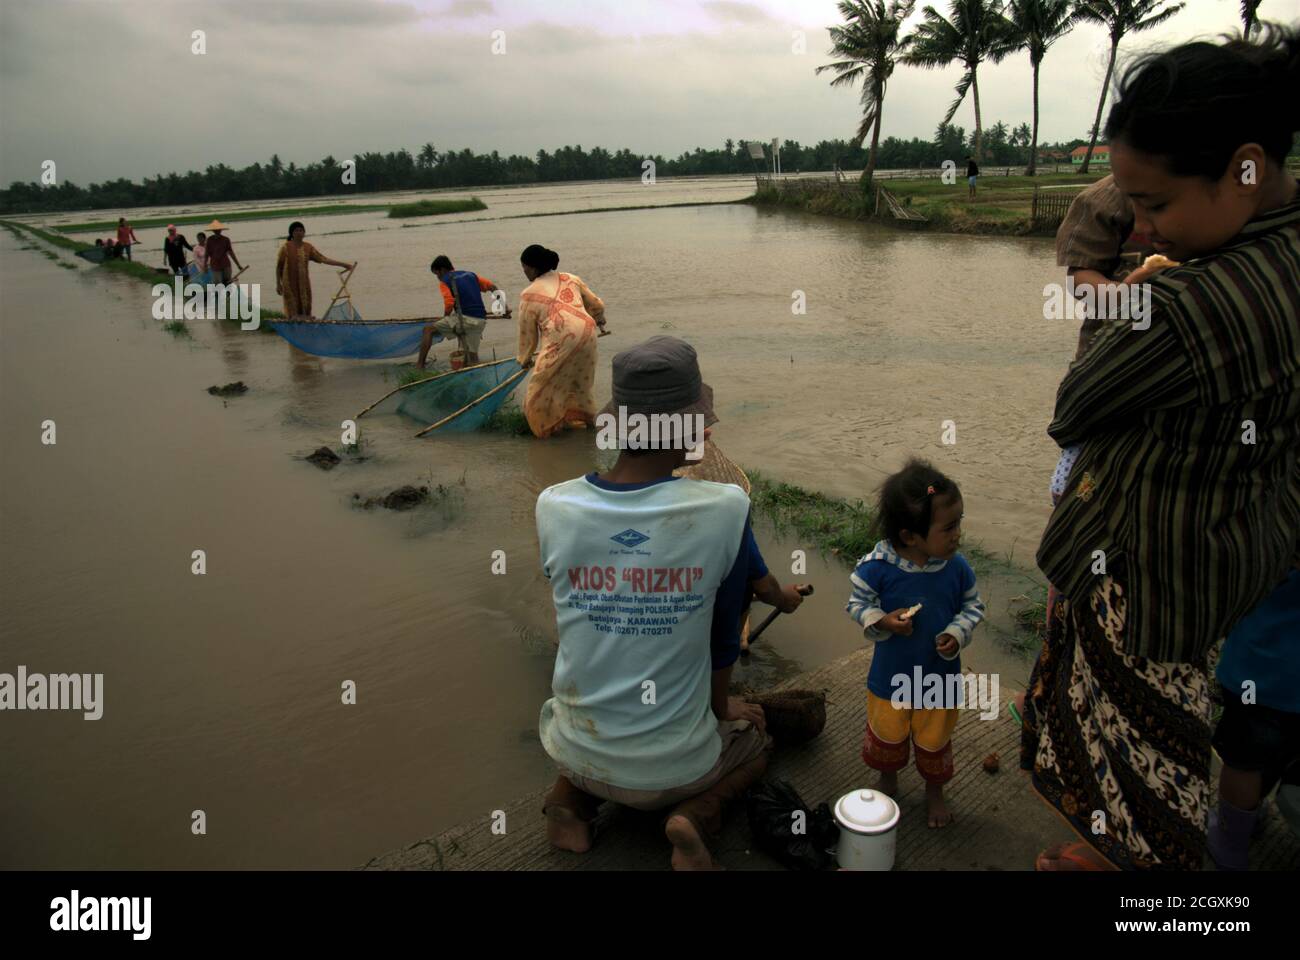 Landwirte, die während der Regenzeit gemeinsam vom Ufer aus fischen, haben einige landwirtschaftliche Gebiete in Karawang, Indonesien überflutet. Stockfoto